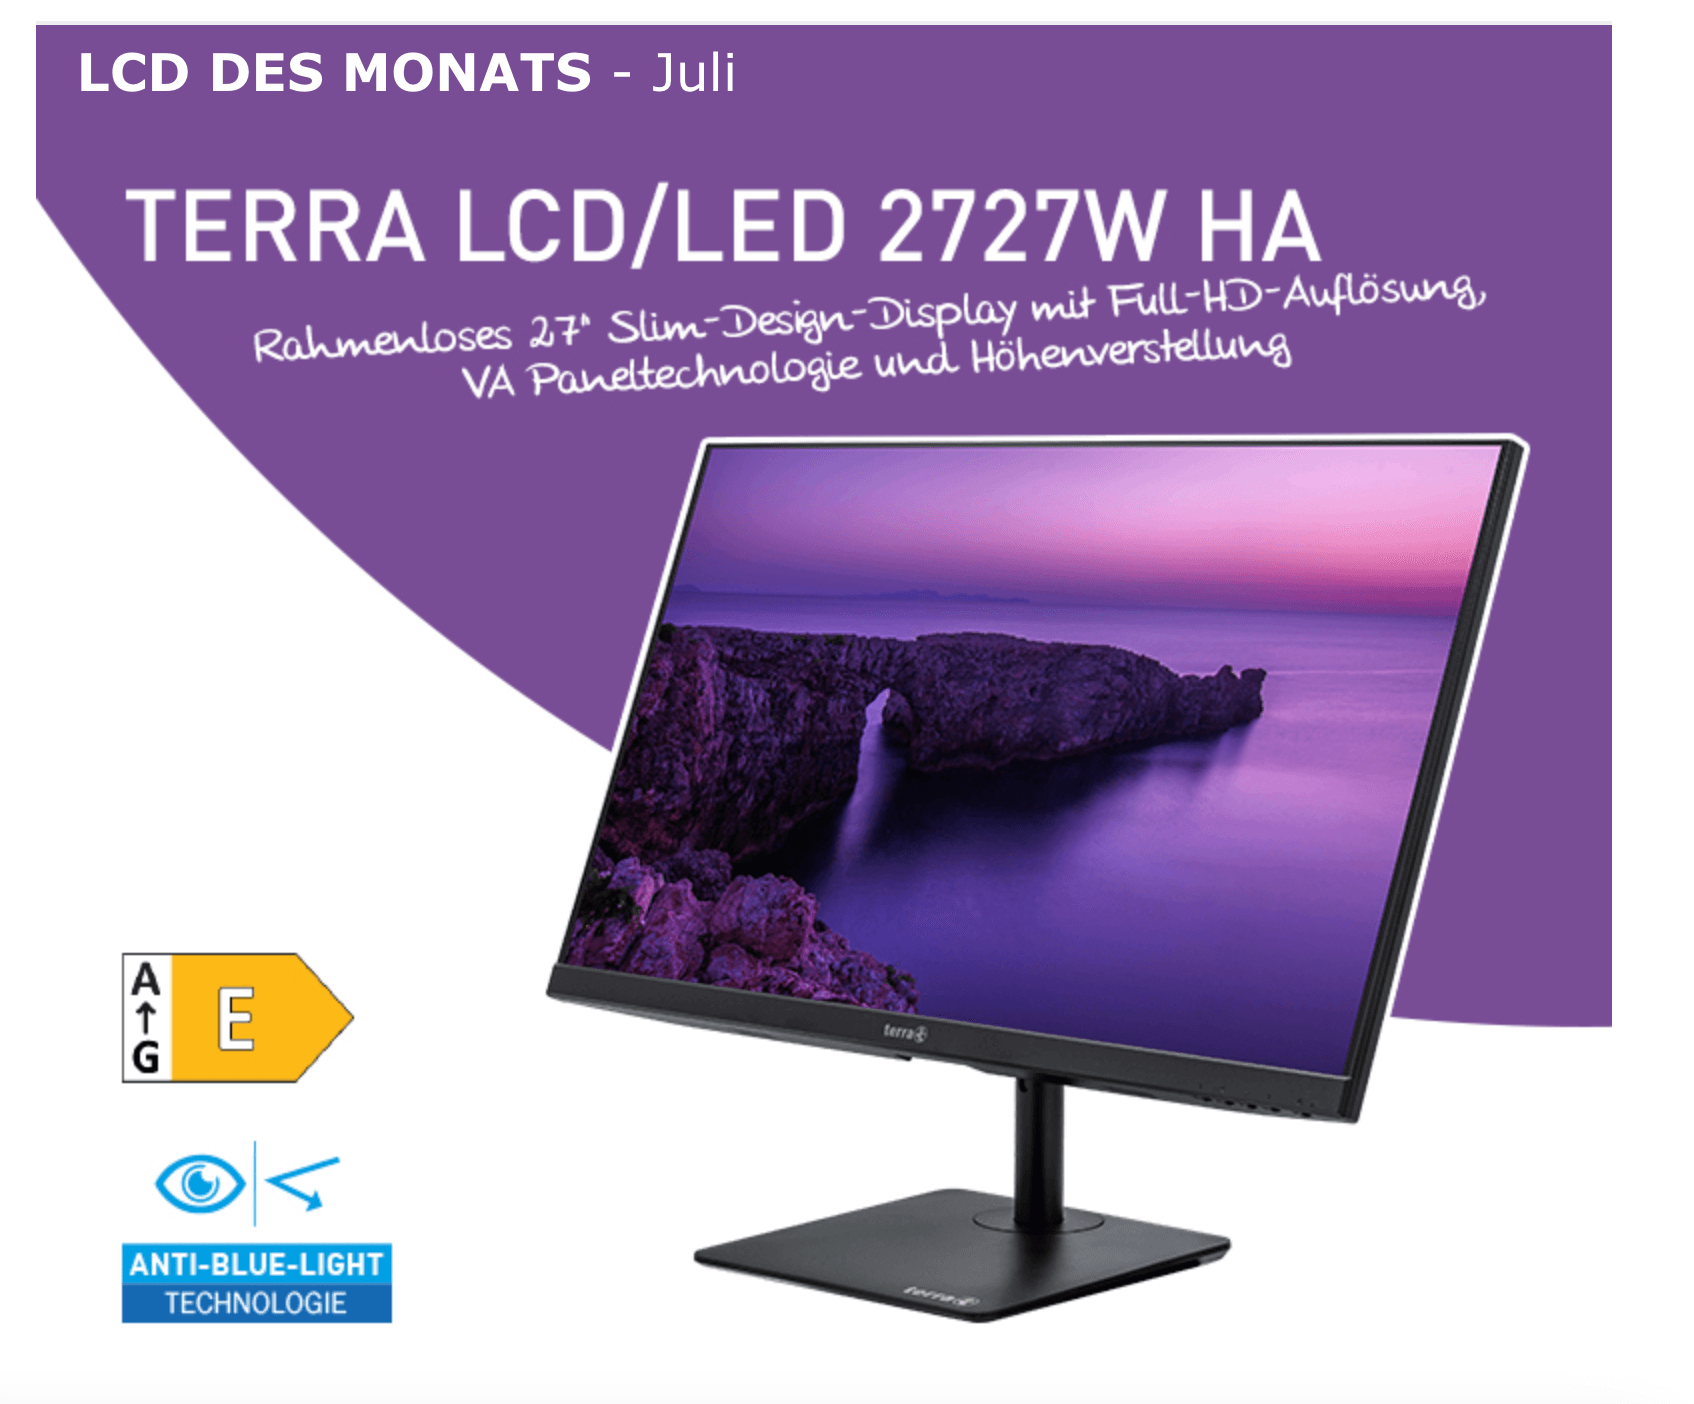 TERRA LCD/LED 2727W HA